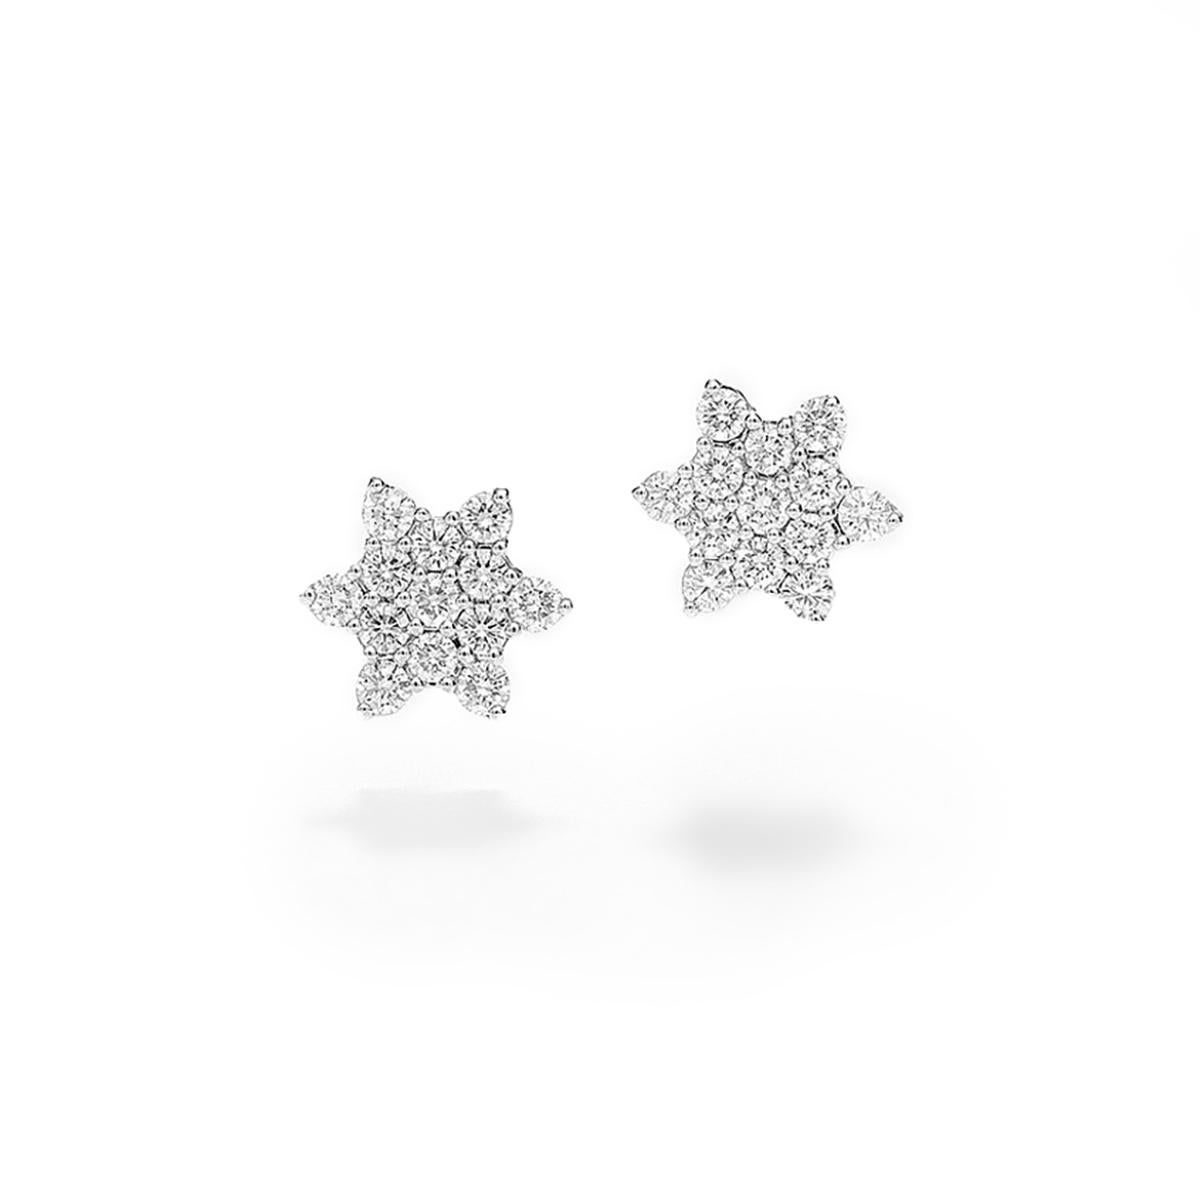 Sternförmige Ohrringe aus 18 Karat Weißgold, mit 1,22 Karat Diamanten besetzt  